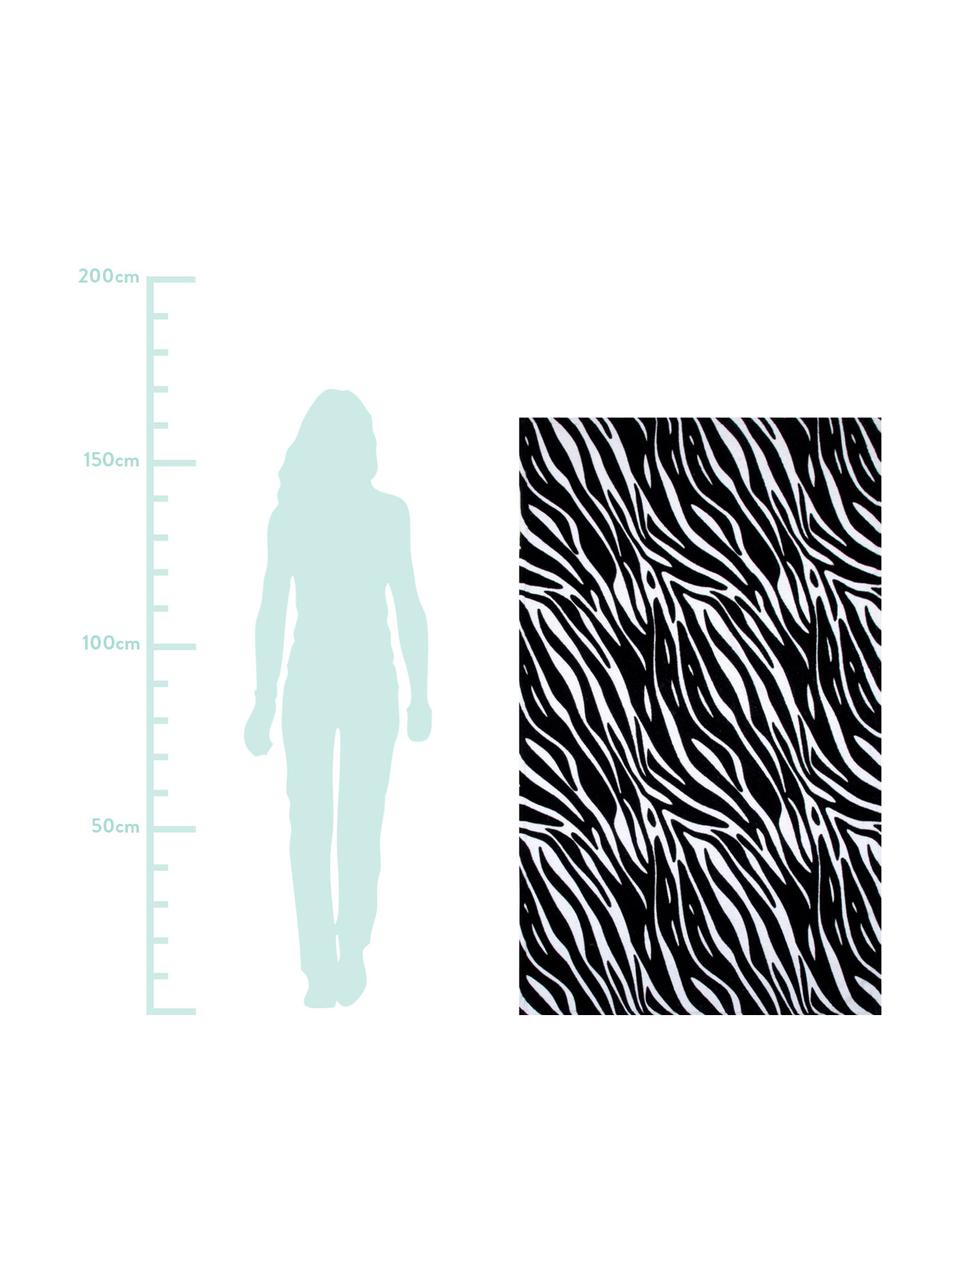 Strandtuch Zebra, 100% Baumwolle, leichte Qualität
350 g/m², Schwarz,Weiss, 90 x 160 cm